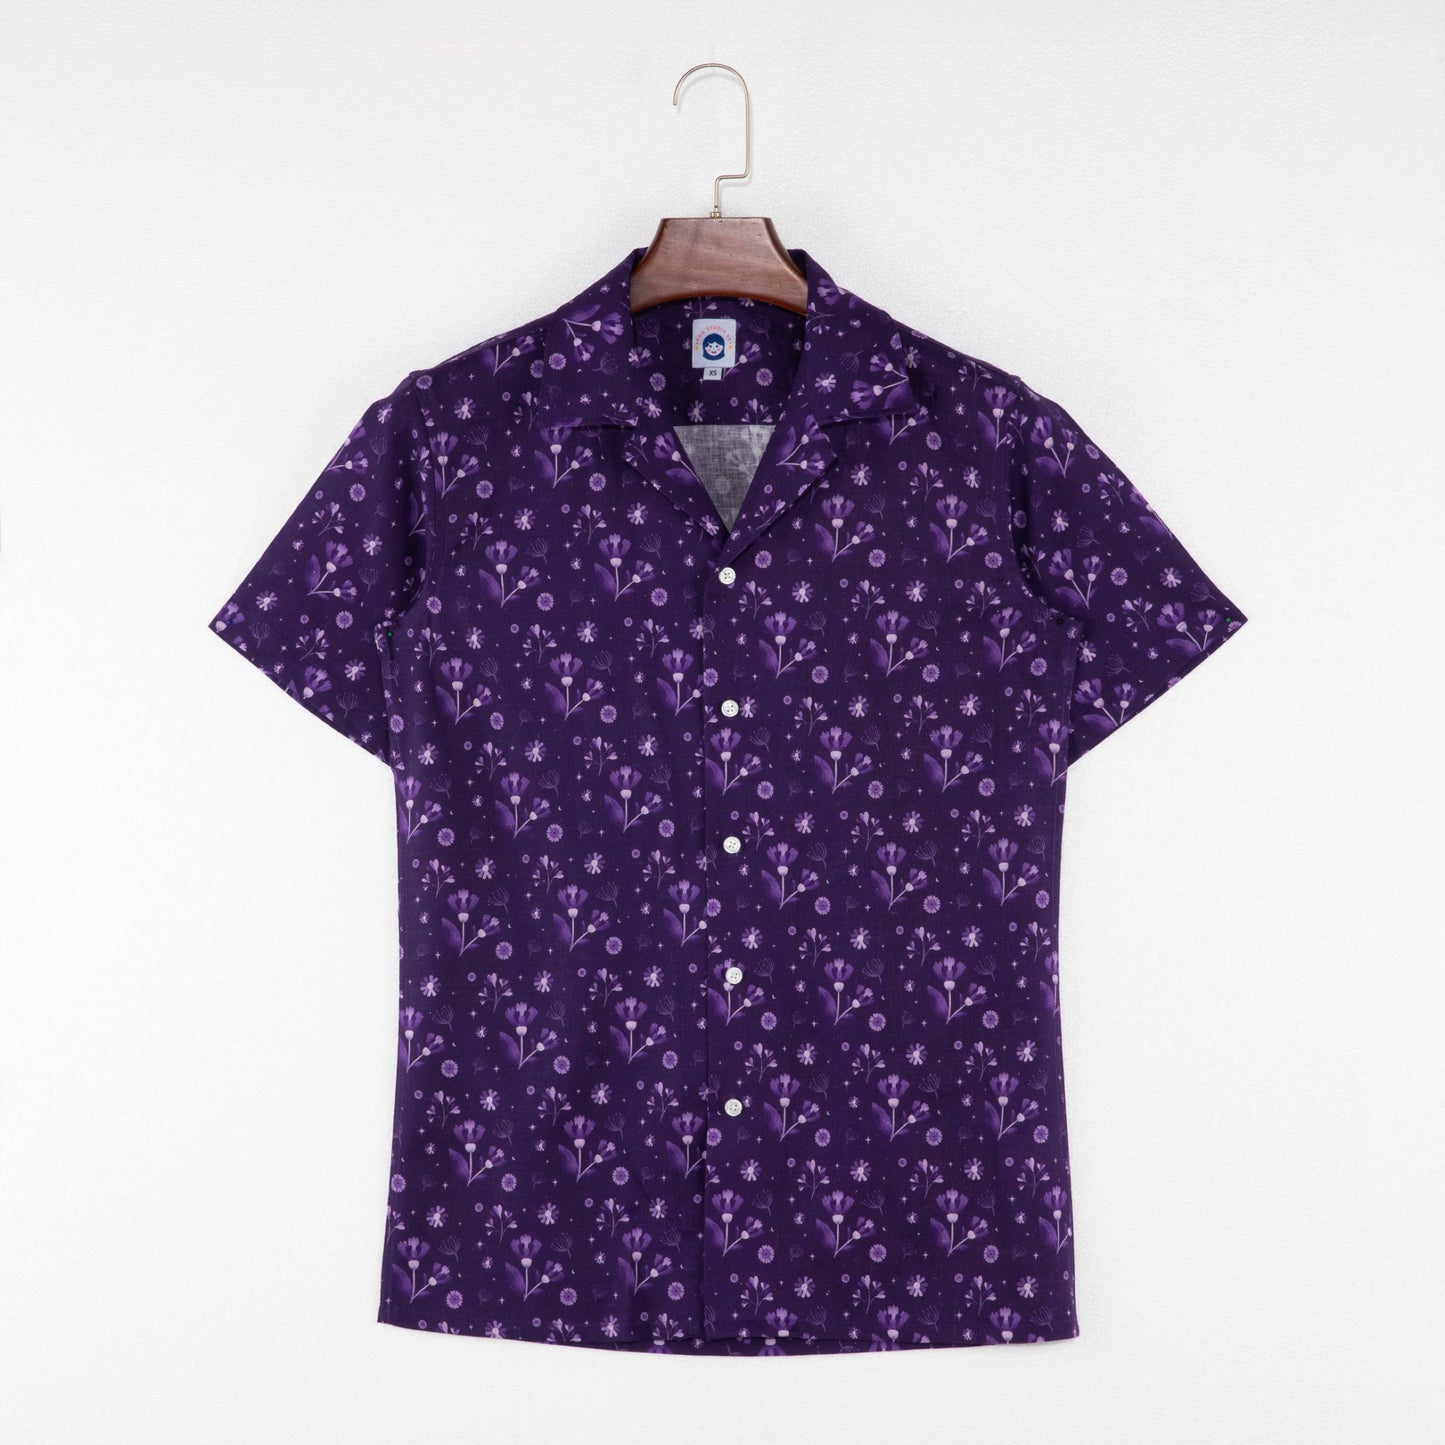 Midnight Garden button-up shirt